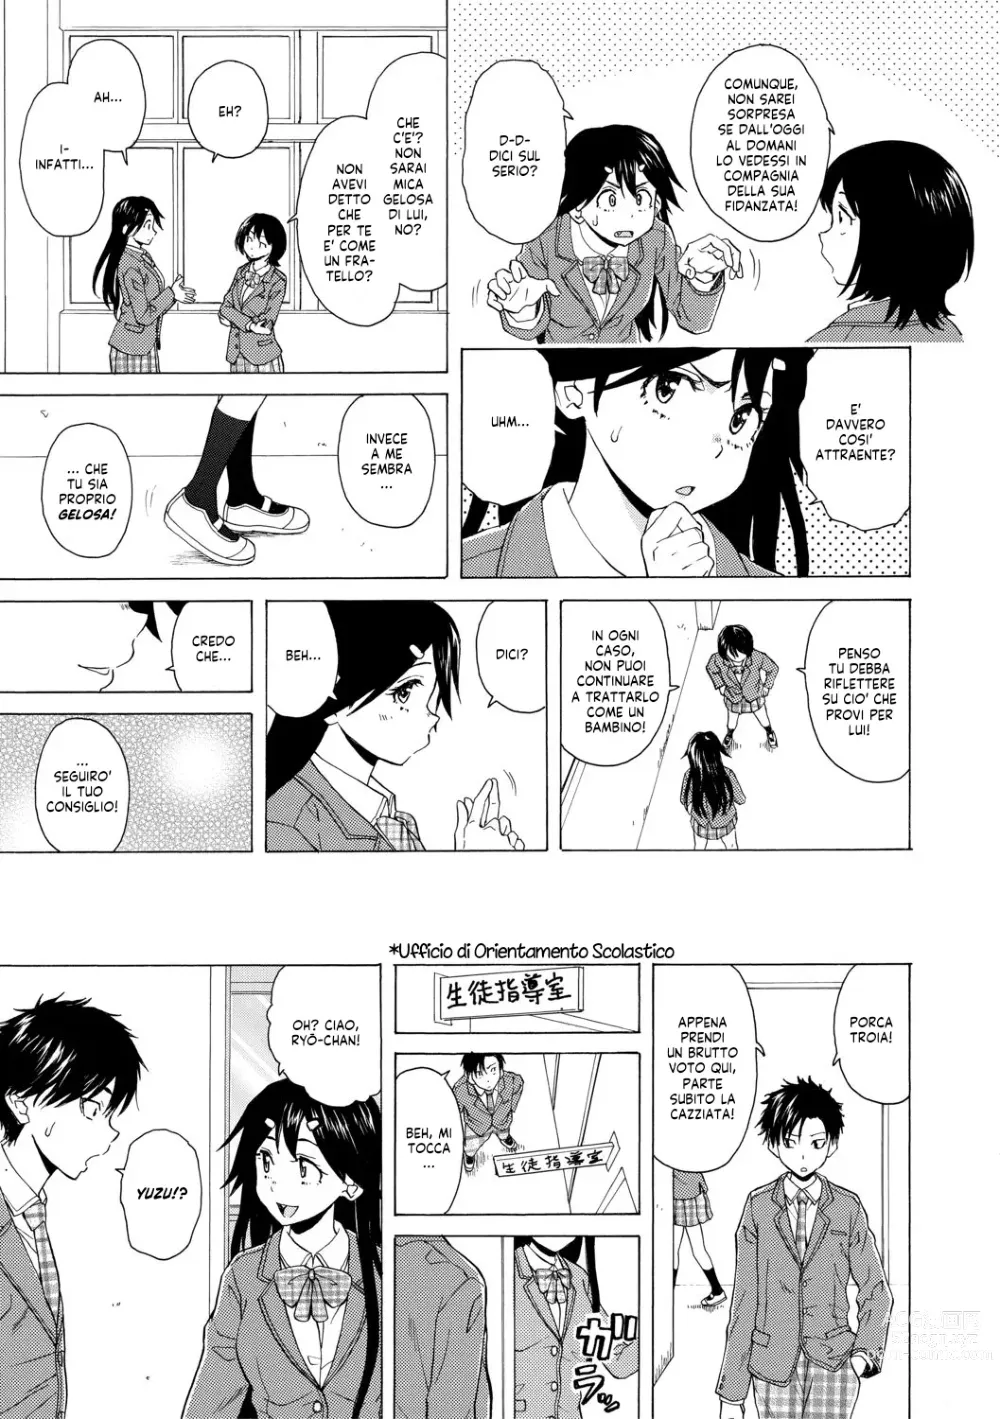 Page 7 of manga Una Professoressa Escort in Camera Mia